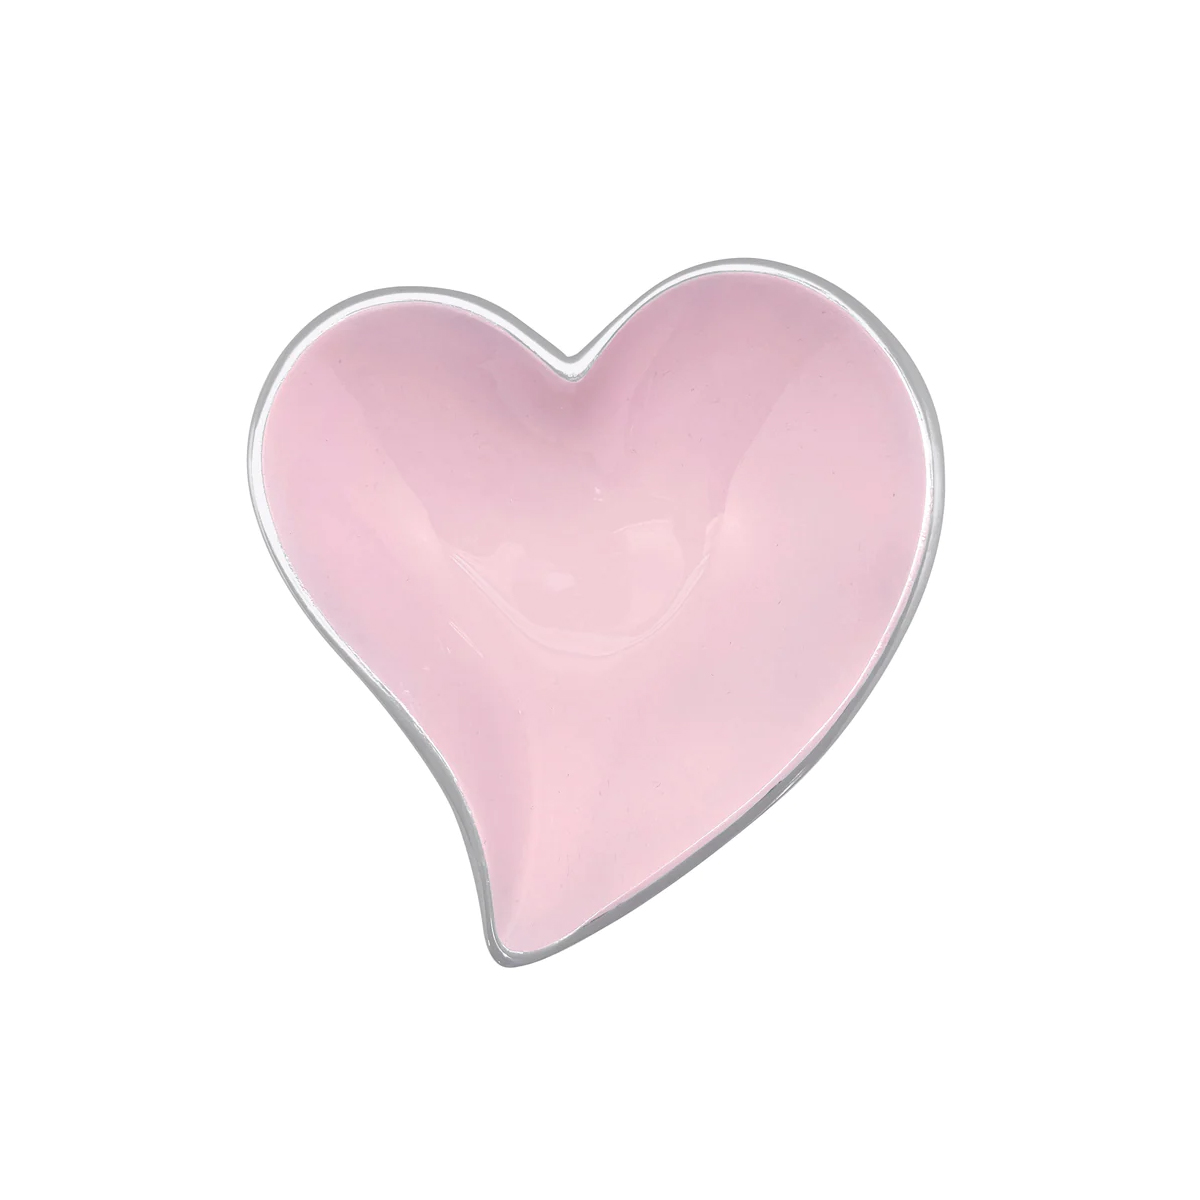 Mariposa - Small Pink Heart Bowl